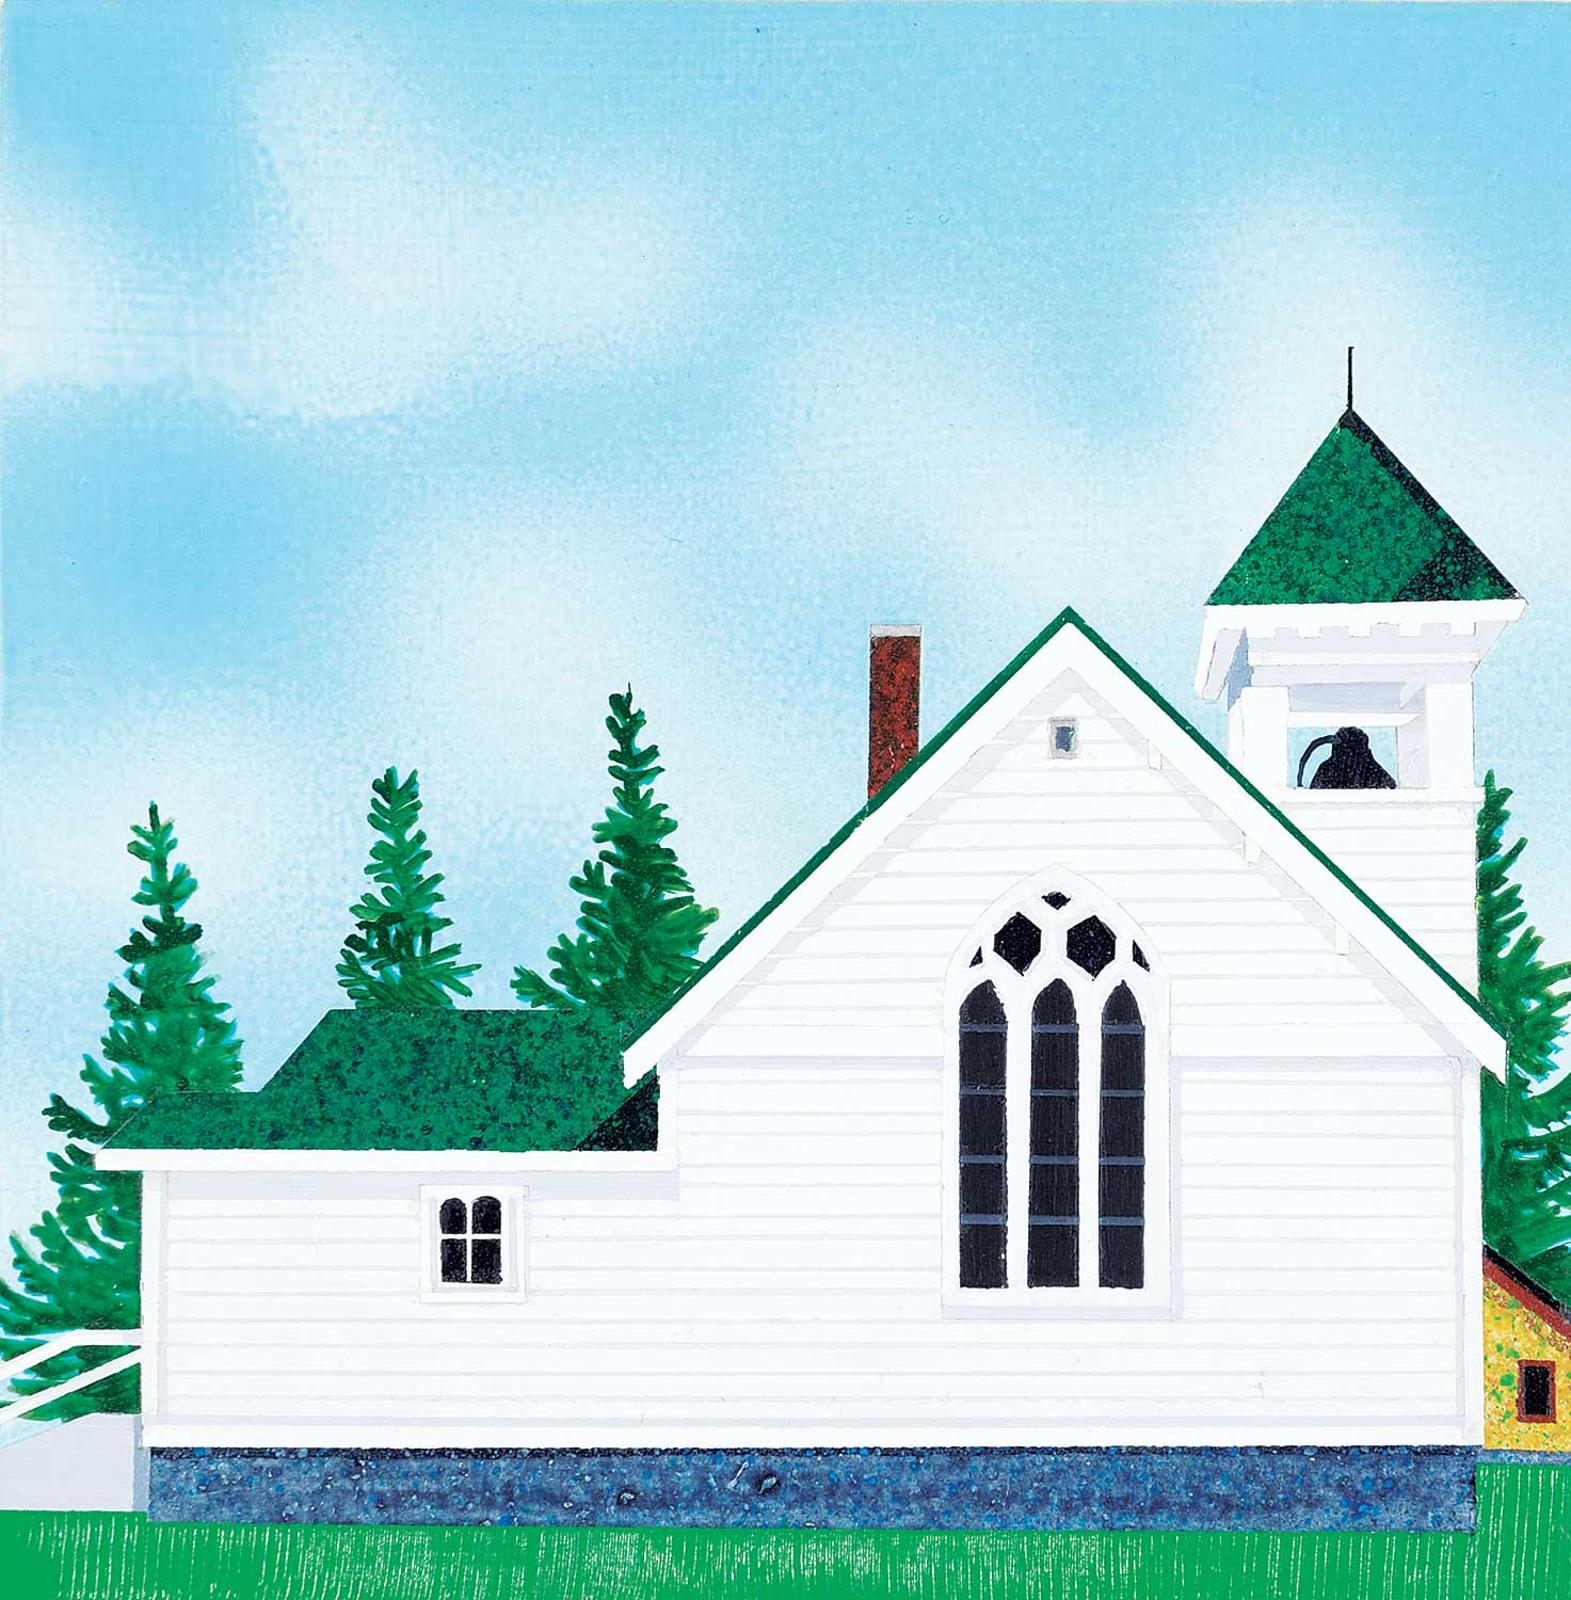 David Allan Thauberger (1948) - Little Church